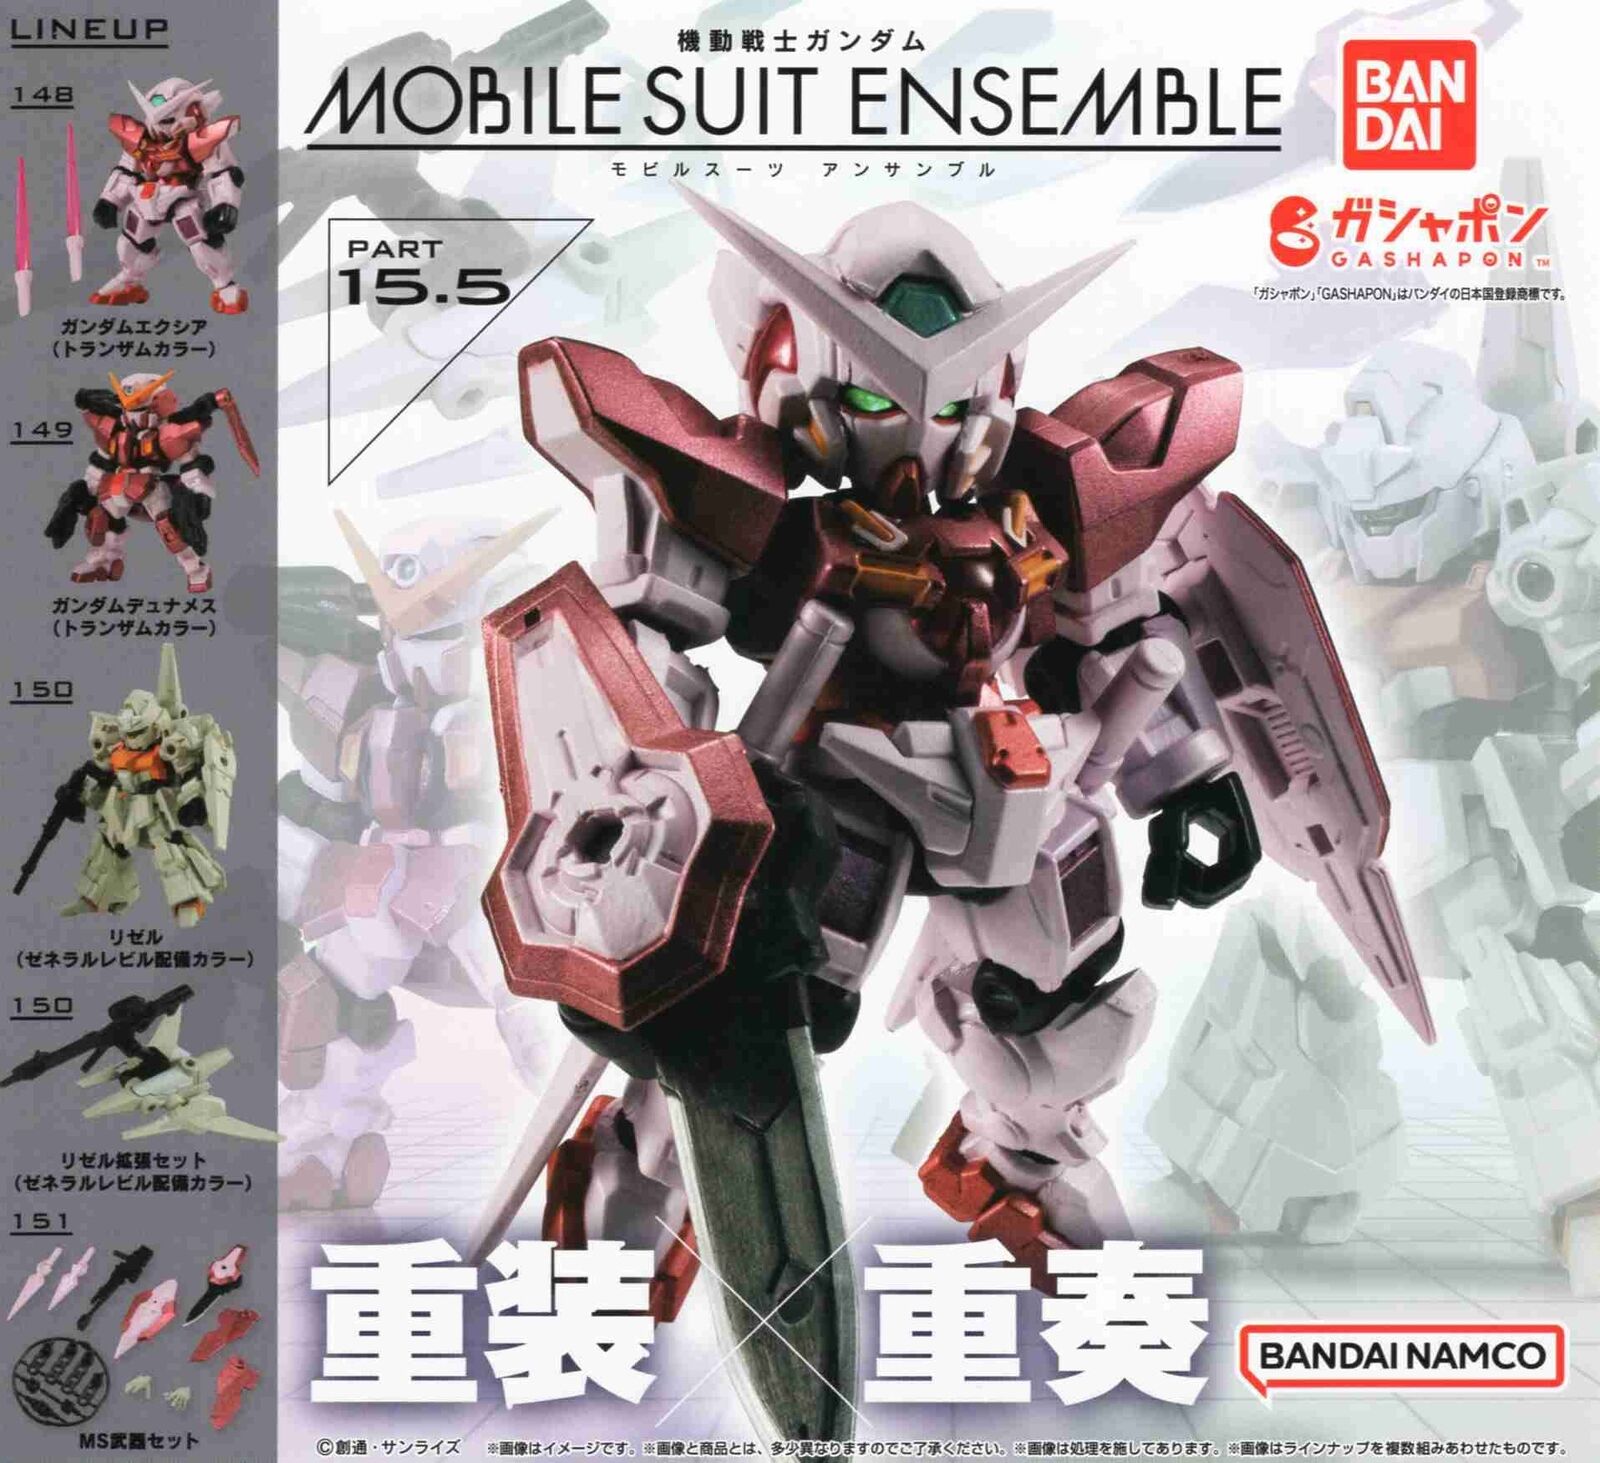 Mobile Suit Gundam MOBILE SUIT ENSEMBLE 15.5 All 5 Types Set Plastic Model